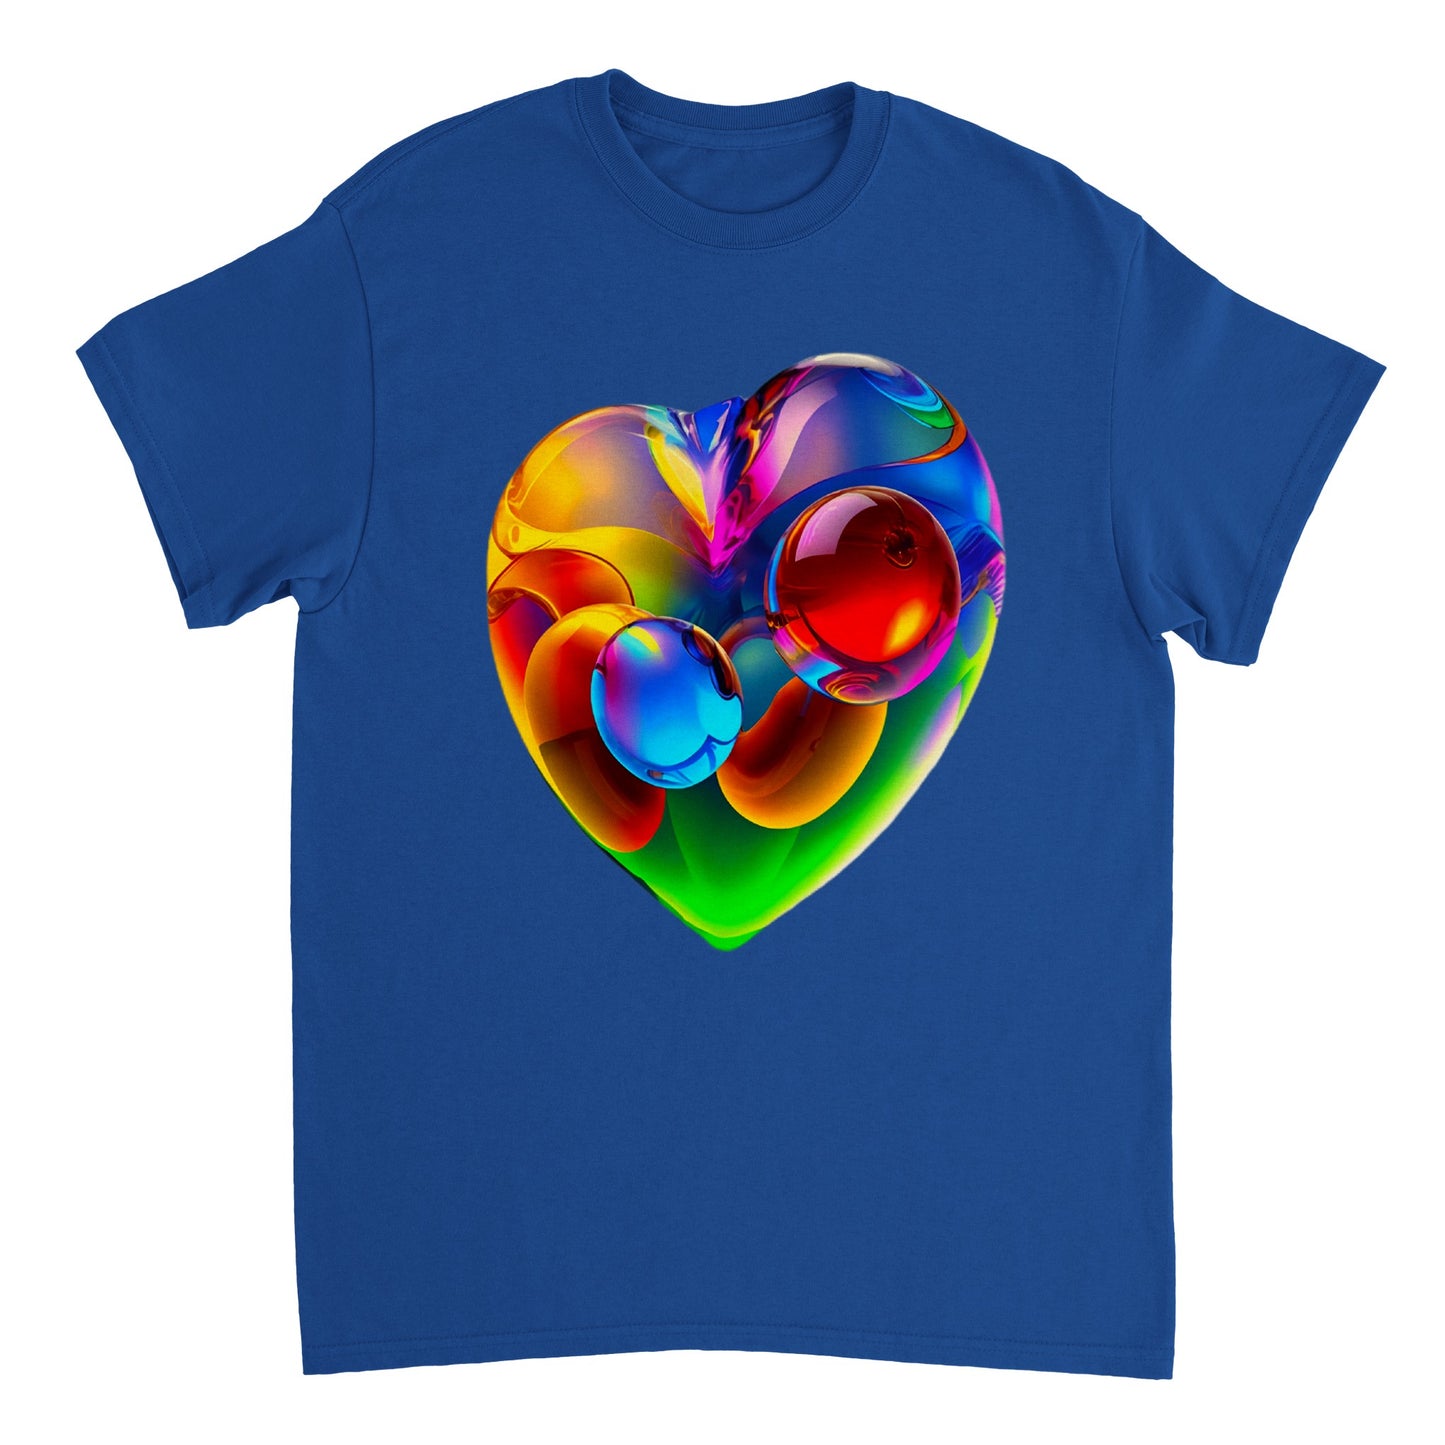 Love Heart - Heavyweight Unisex Crewneck T-shirt 64